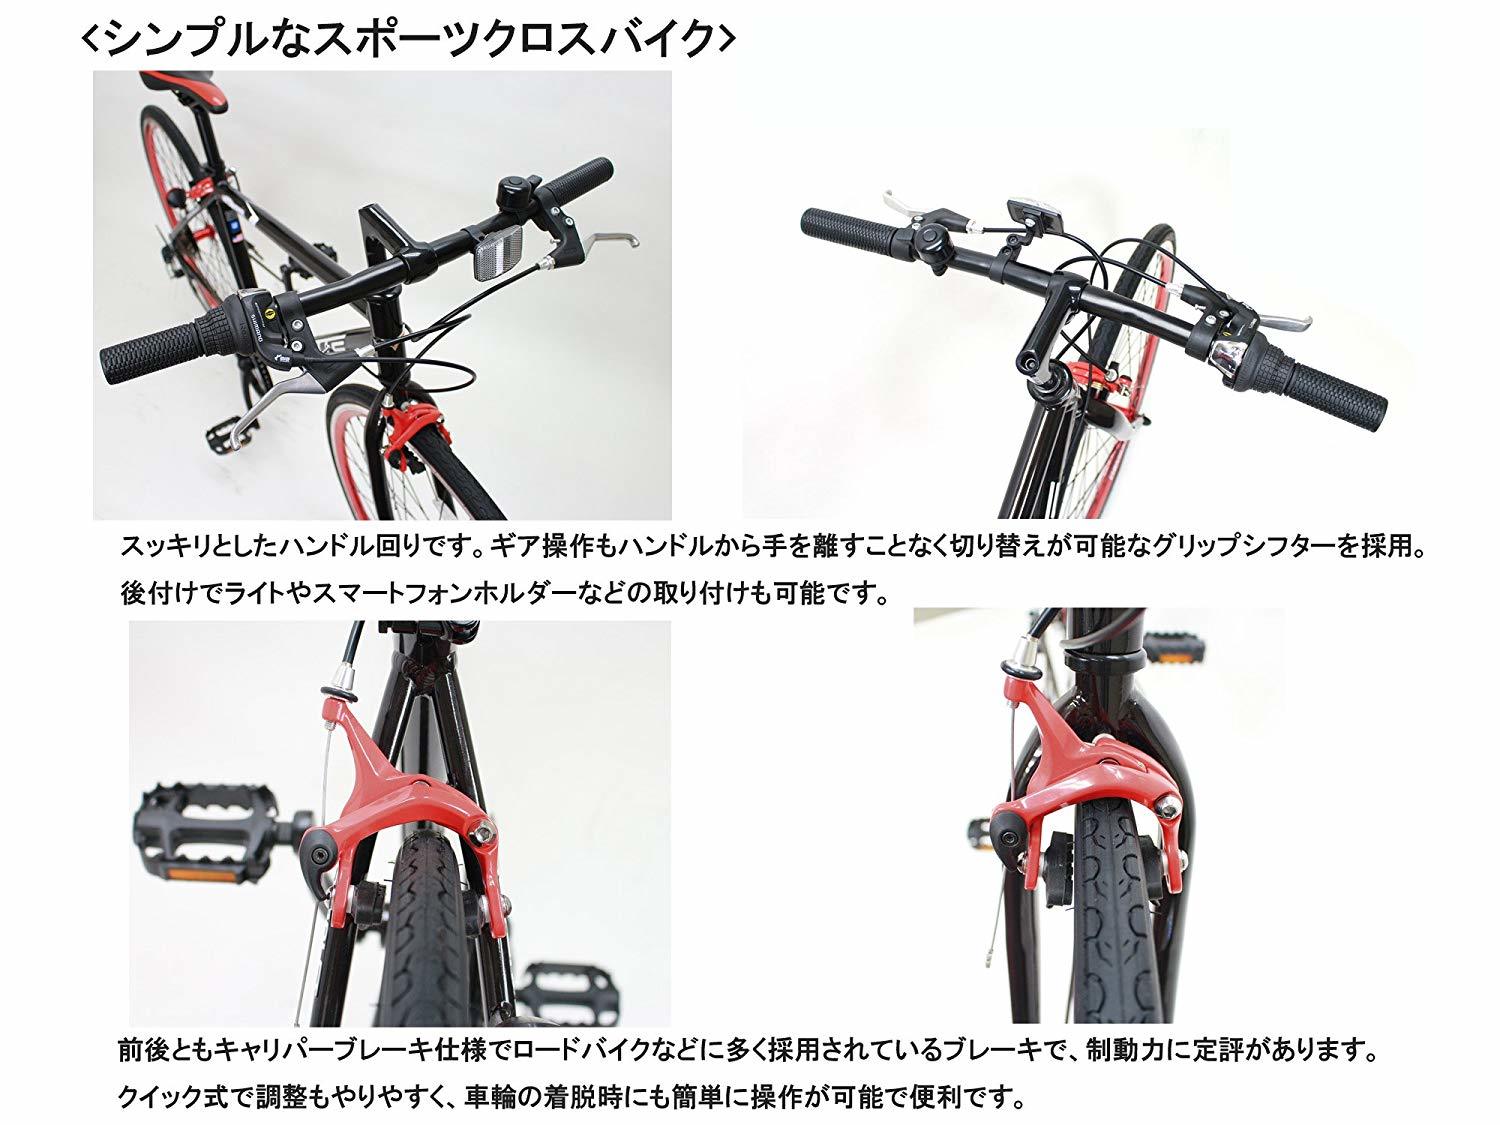 安いクロスバイクおすすめ12選 2万円台のコスパ最強でおしゃれな製品はこれ 暮らし の